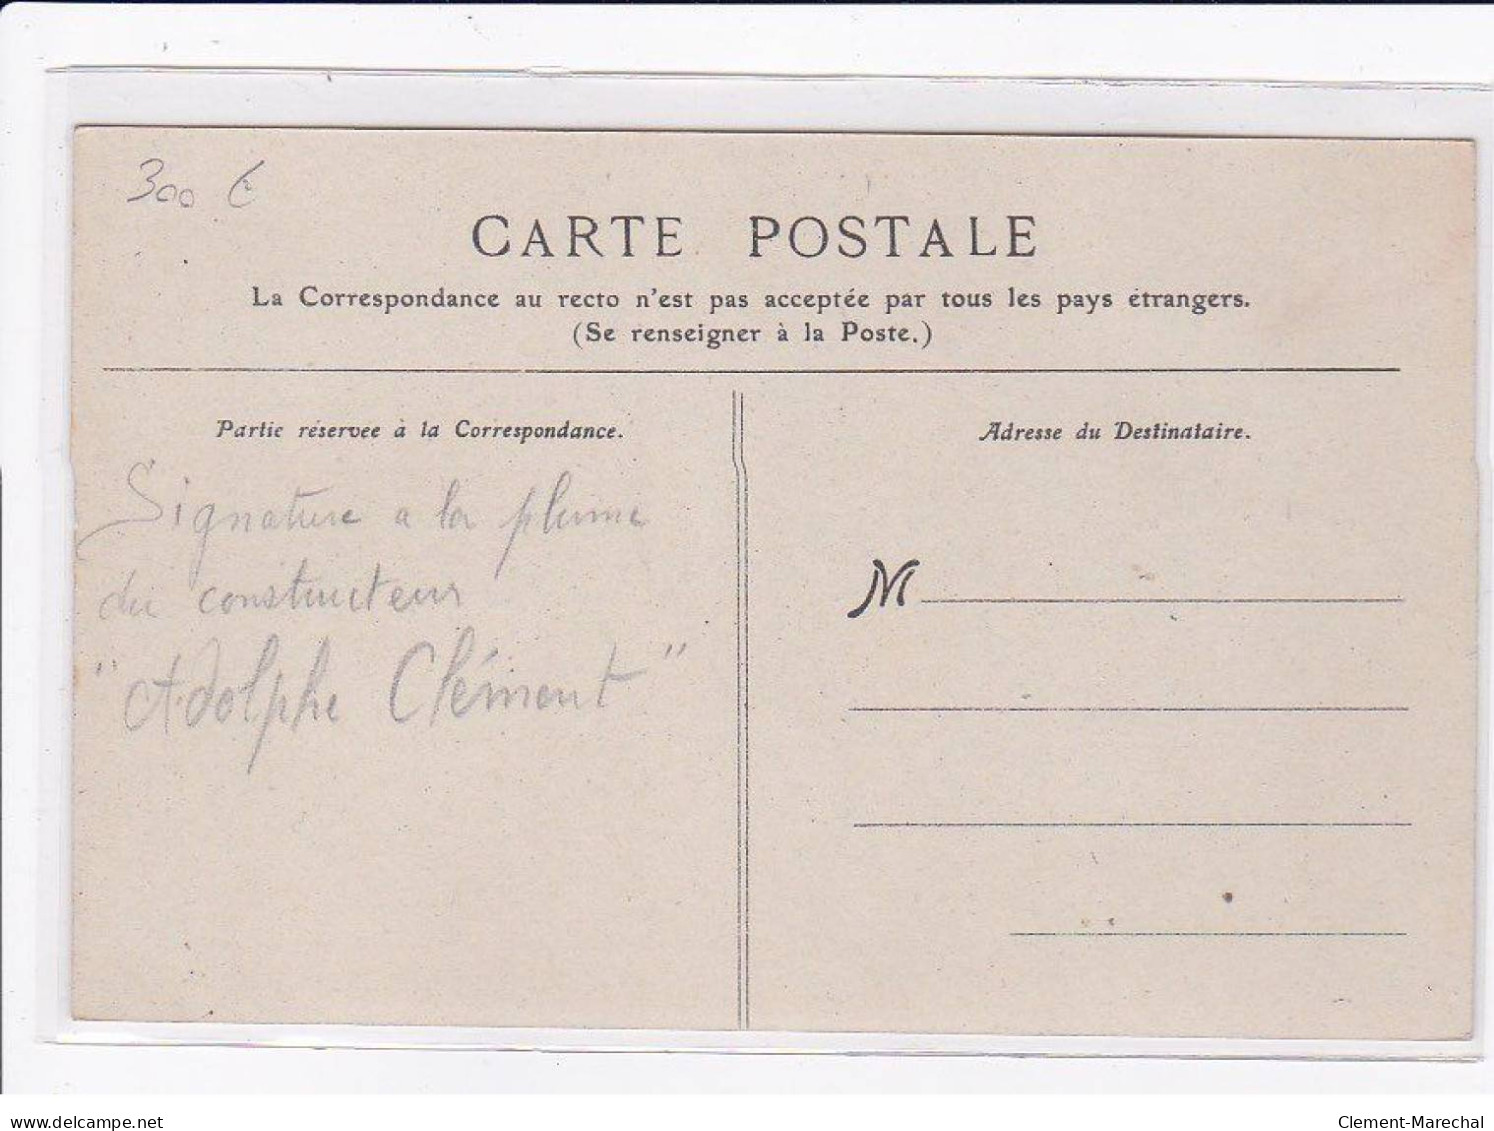 AVIATION : BALLON - Autographe D' Adolphe CLEMENT (constructeur CLEMENT-BAYARD) Raide Paris Compiegne- Bon état - Dirigeables